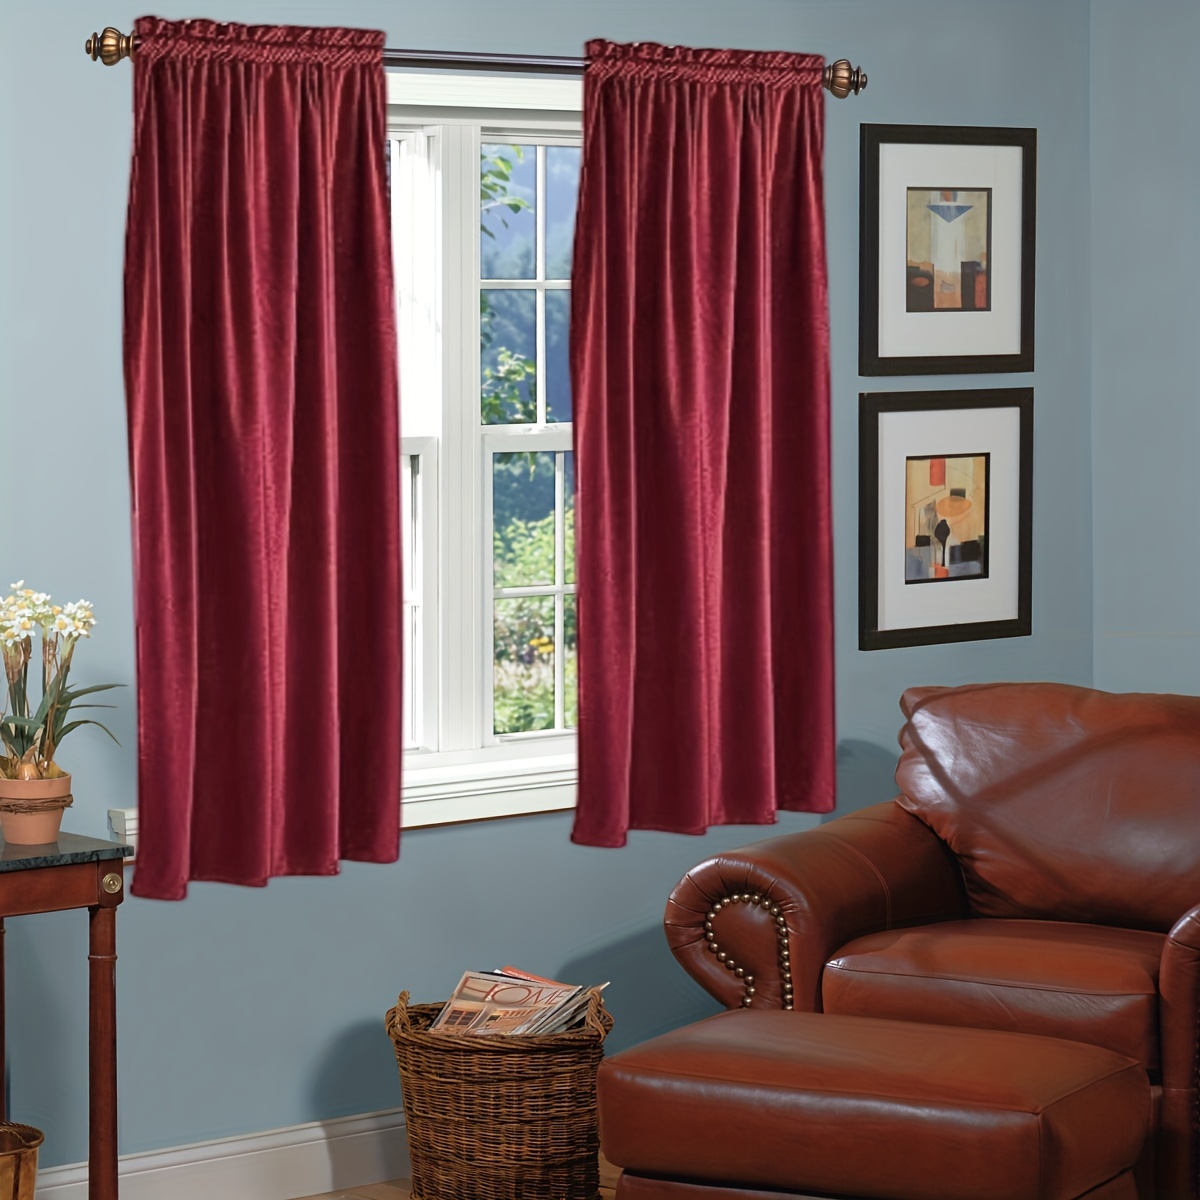 LORDTEX Cortinas de terciopelo gris para sala de estar, cortinas opacas de  terciopelo con aislamiento térmico para oscurecer la habitación, con